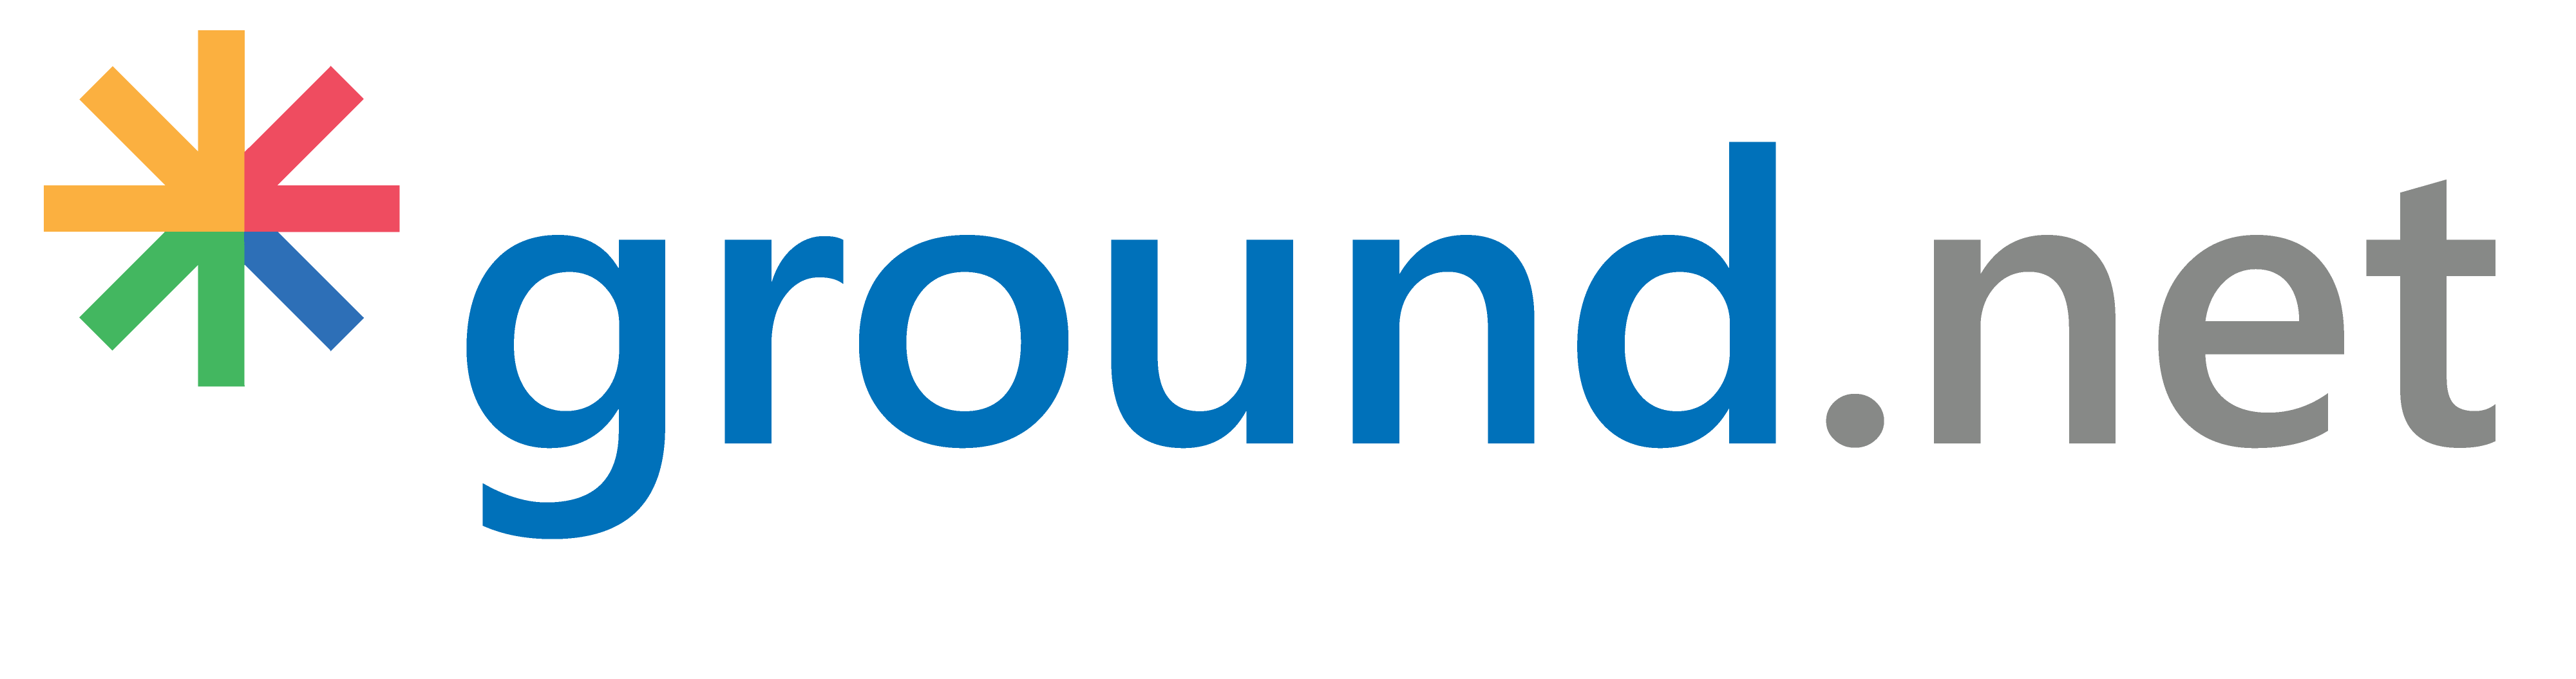 logo-groundnet.png